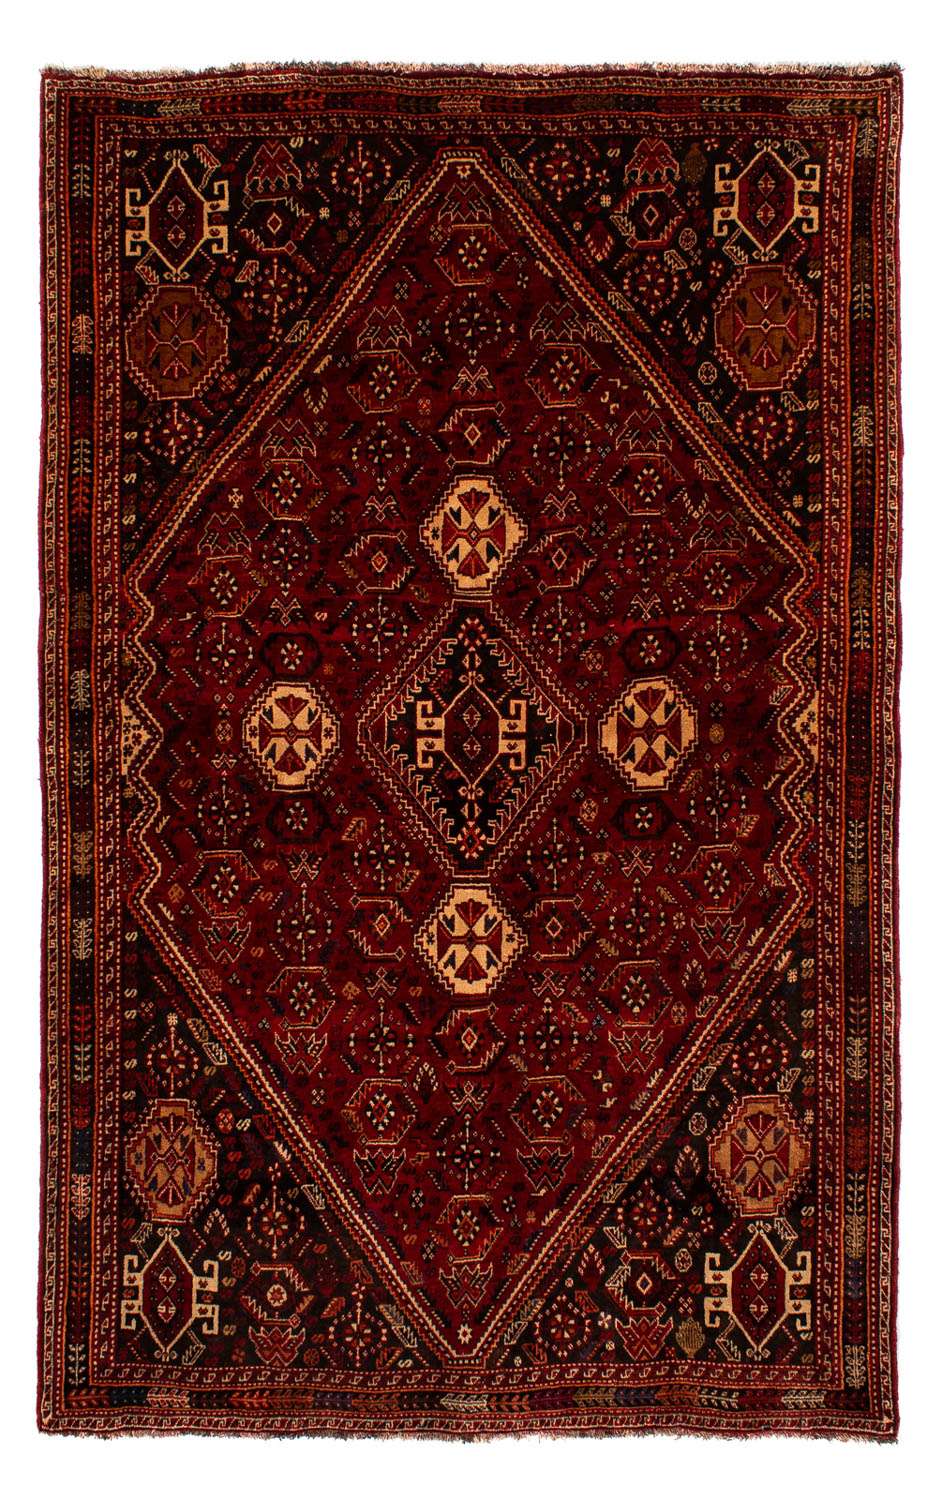 Tapete Persa - Nomadic - 275 x 182 cm - vermelho escuro